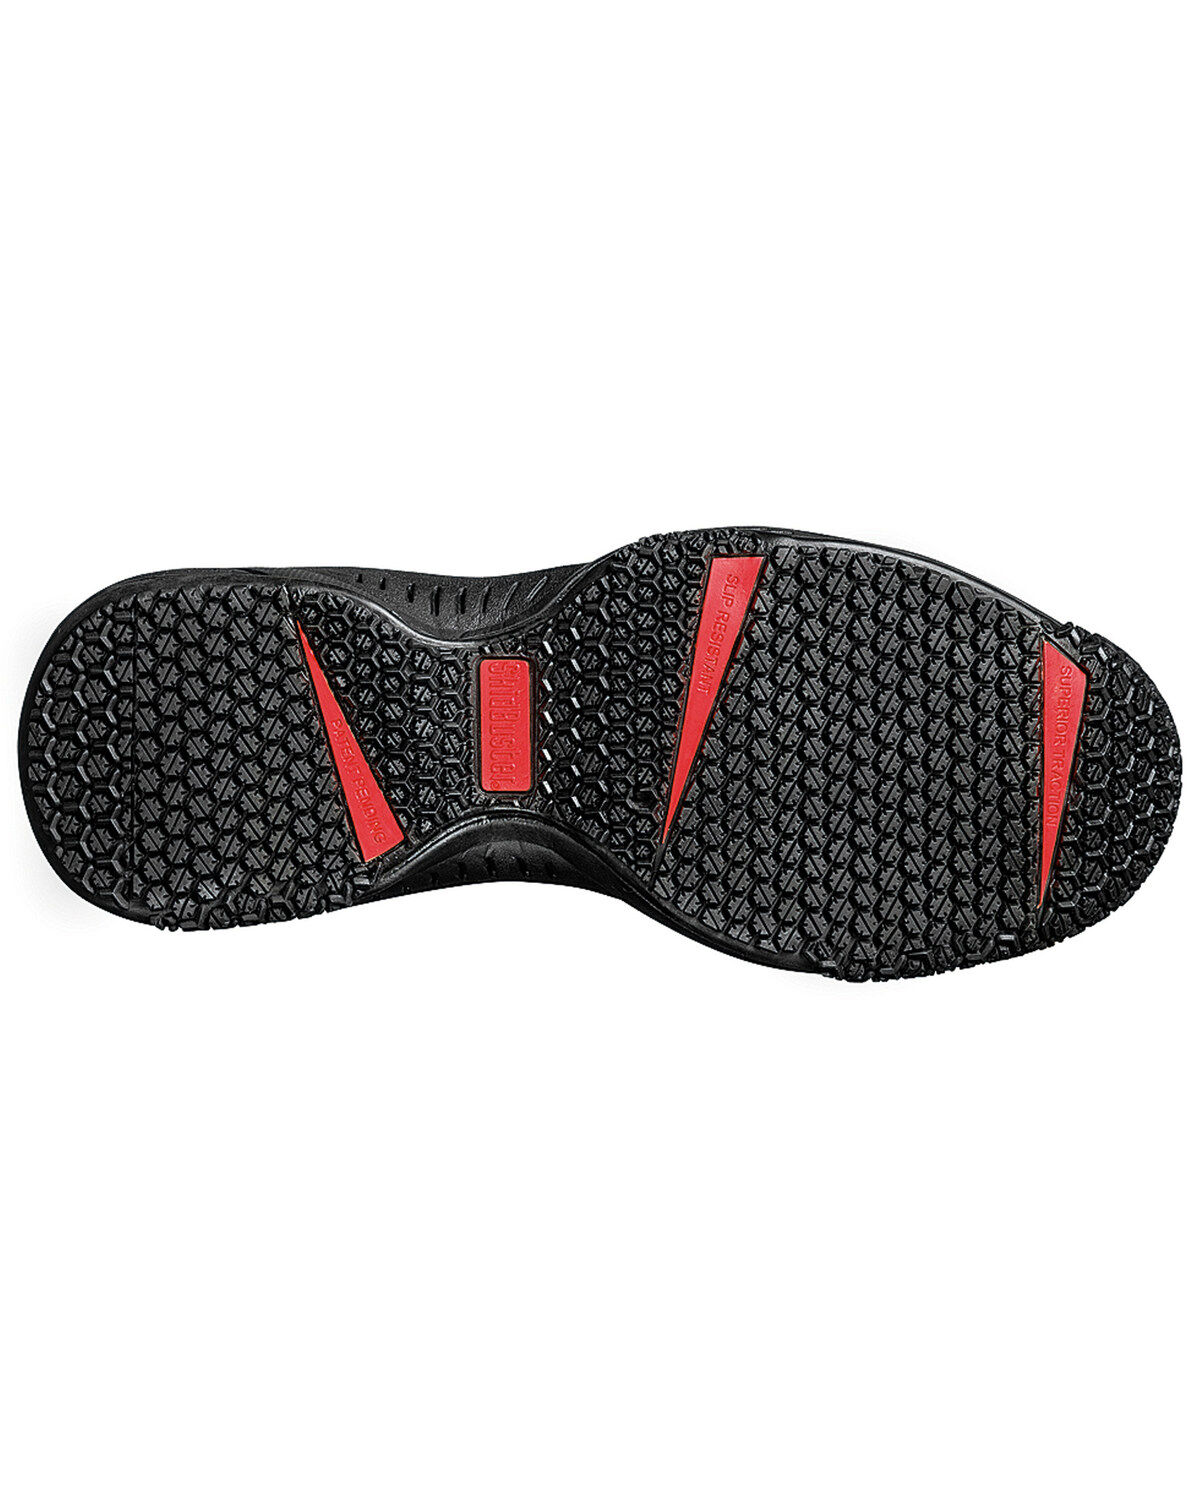 mens waterproof slip resistant shoes